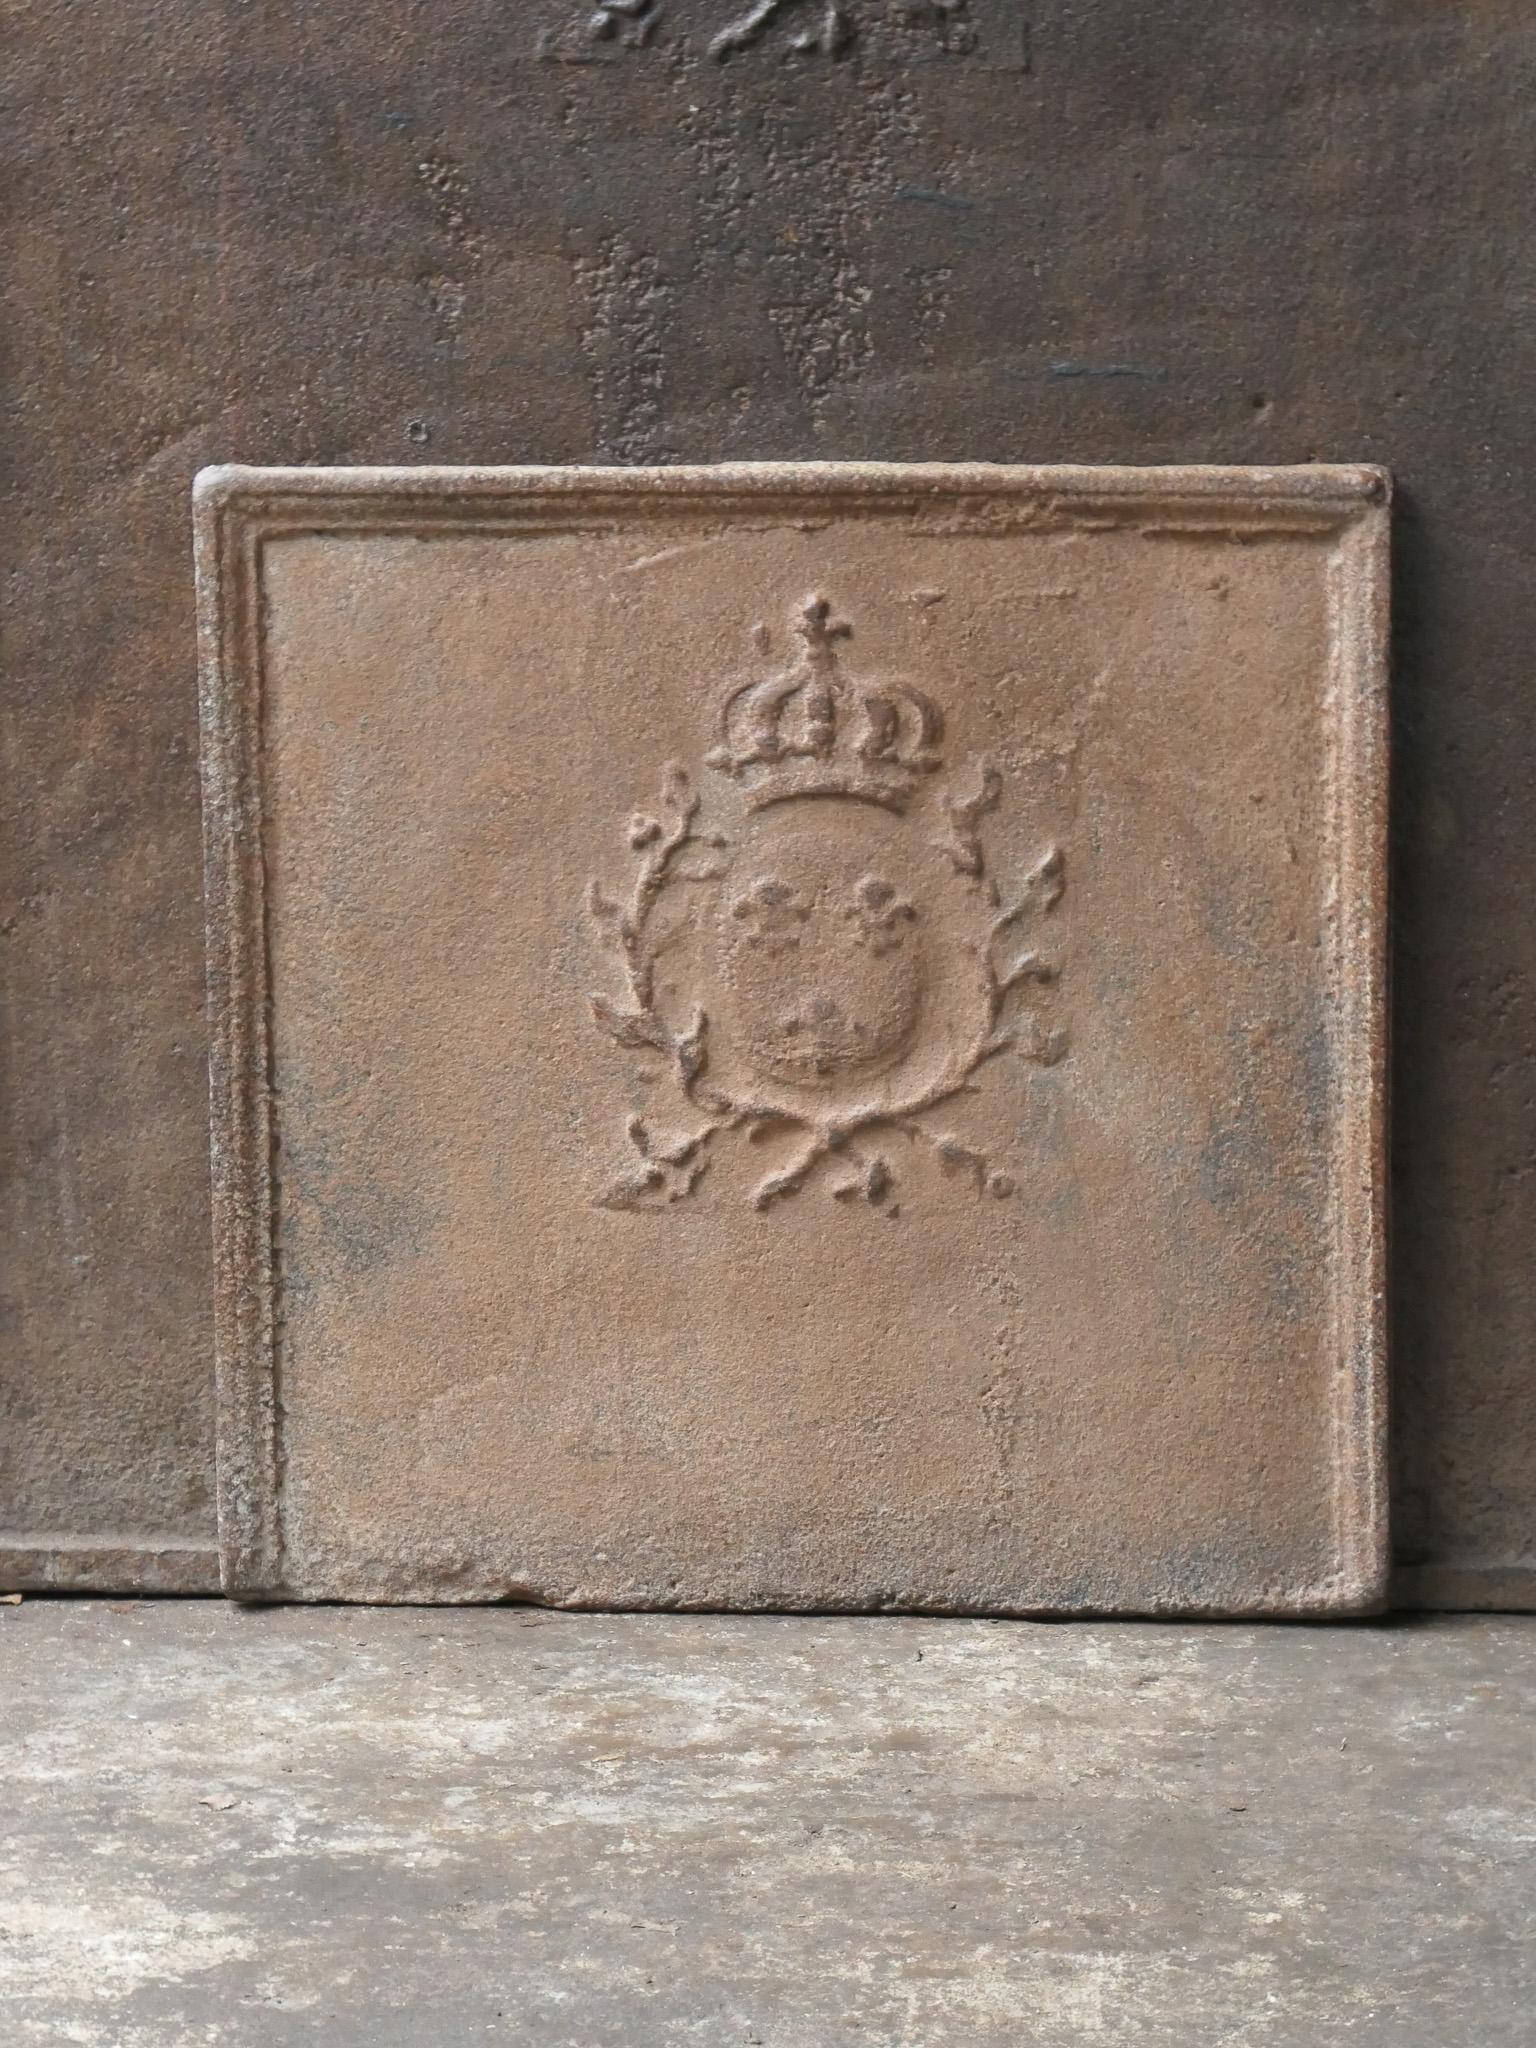 Schöner französischer Louis XV-Kamin aus dem 18. Jahrhundert mit dem Wappen von Frankreich. Dies ist das Wappen des Hauses Bourbon, eines ursprünglich französischen Königshauses, das sich zu einer bedeutenden Dynastie in Europa entwickelte. Sie